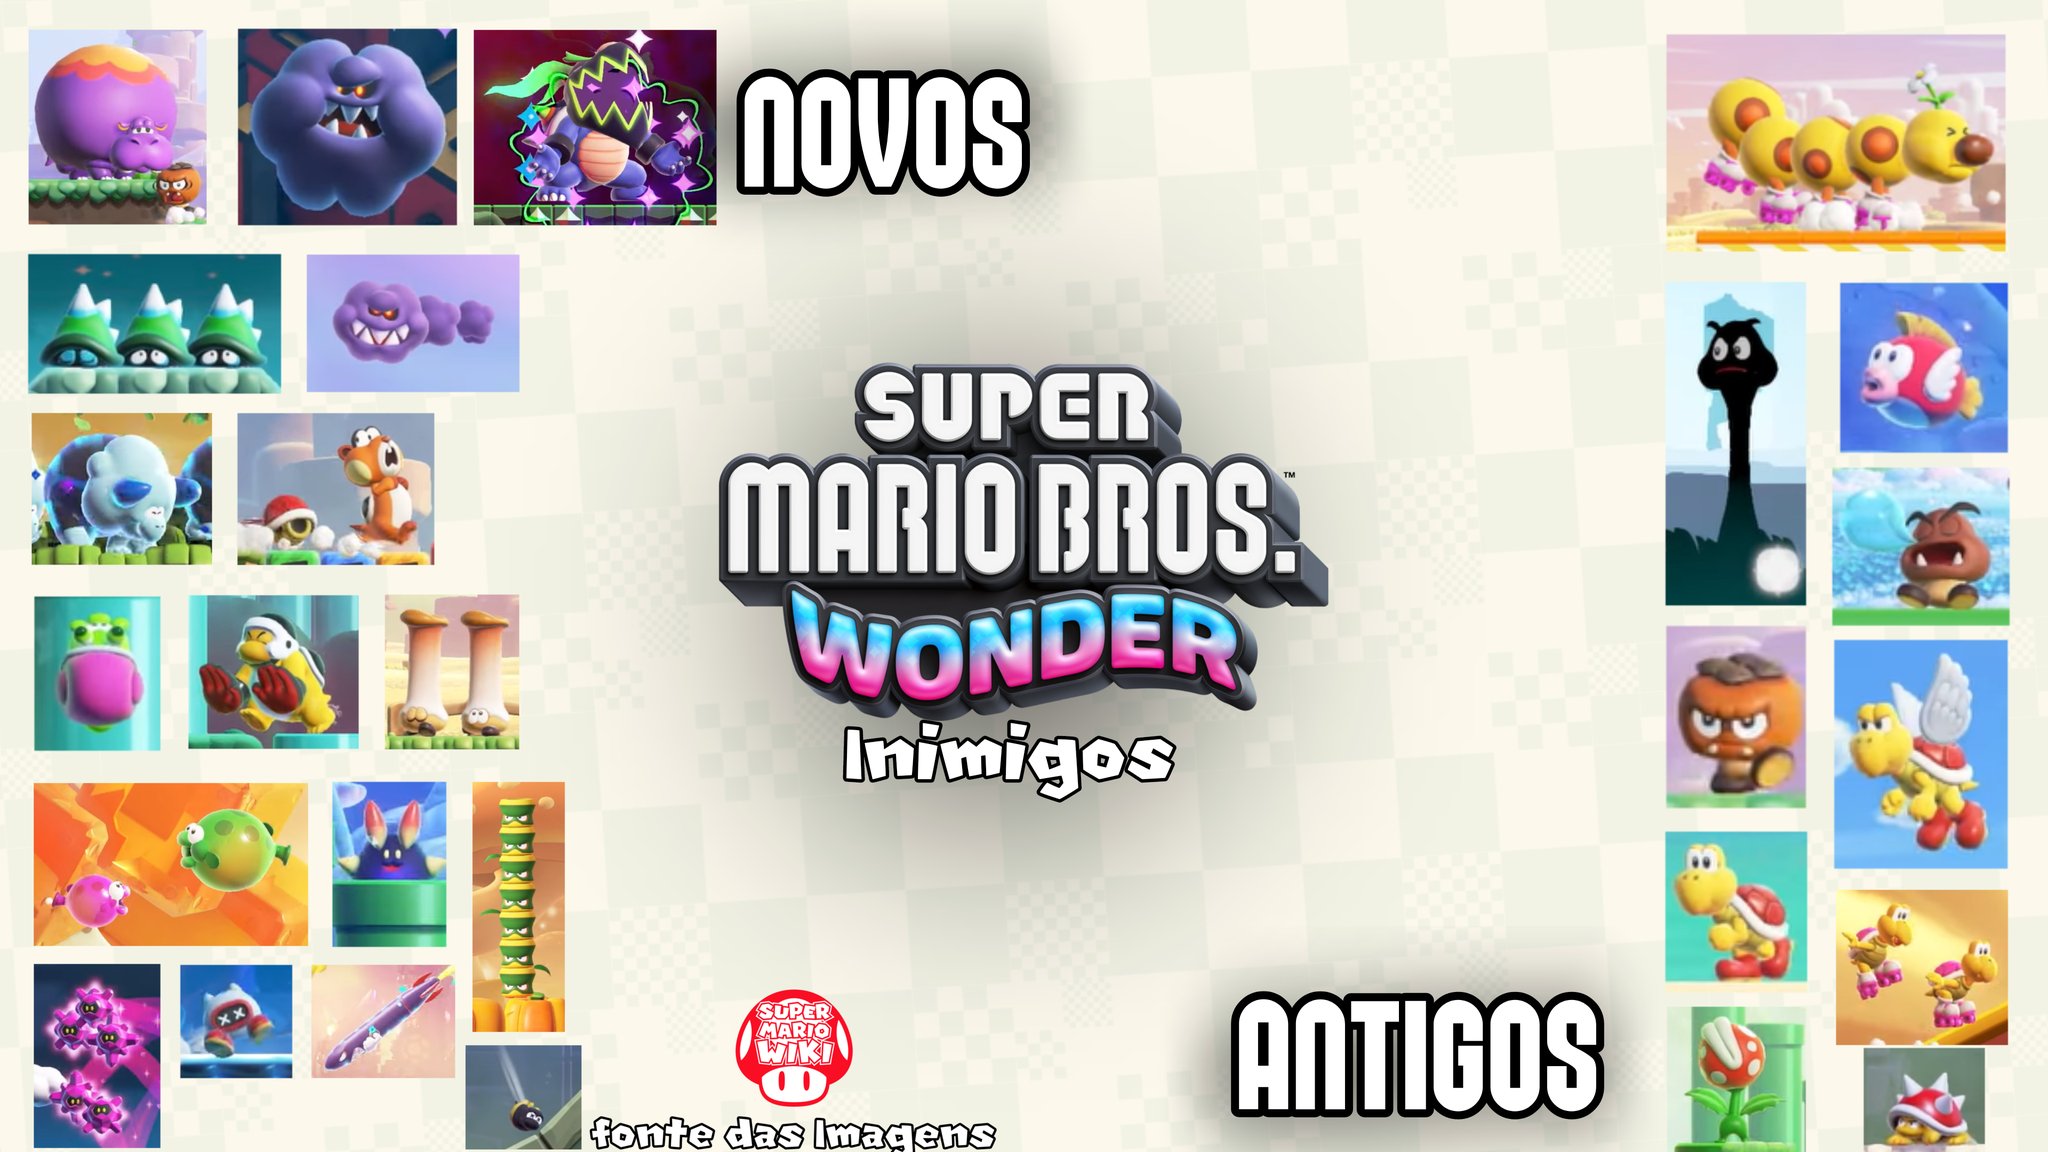 New Super Mario Bros. U Deluxe - Super Mario Wiki, the Mario